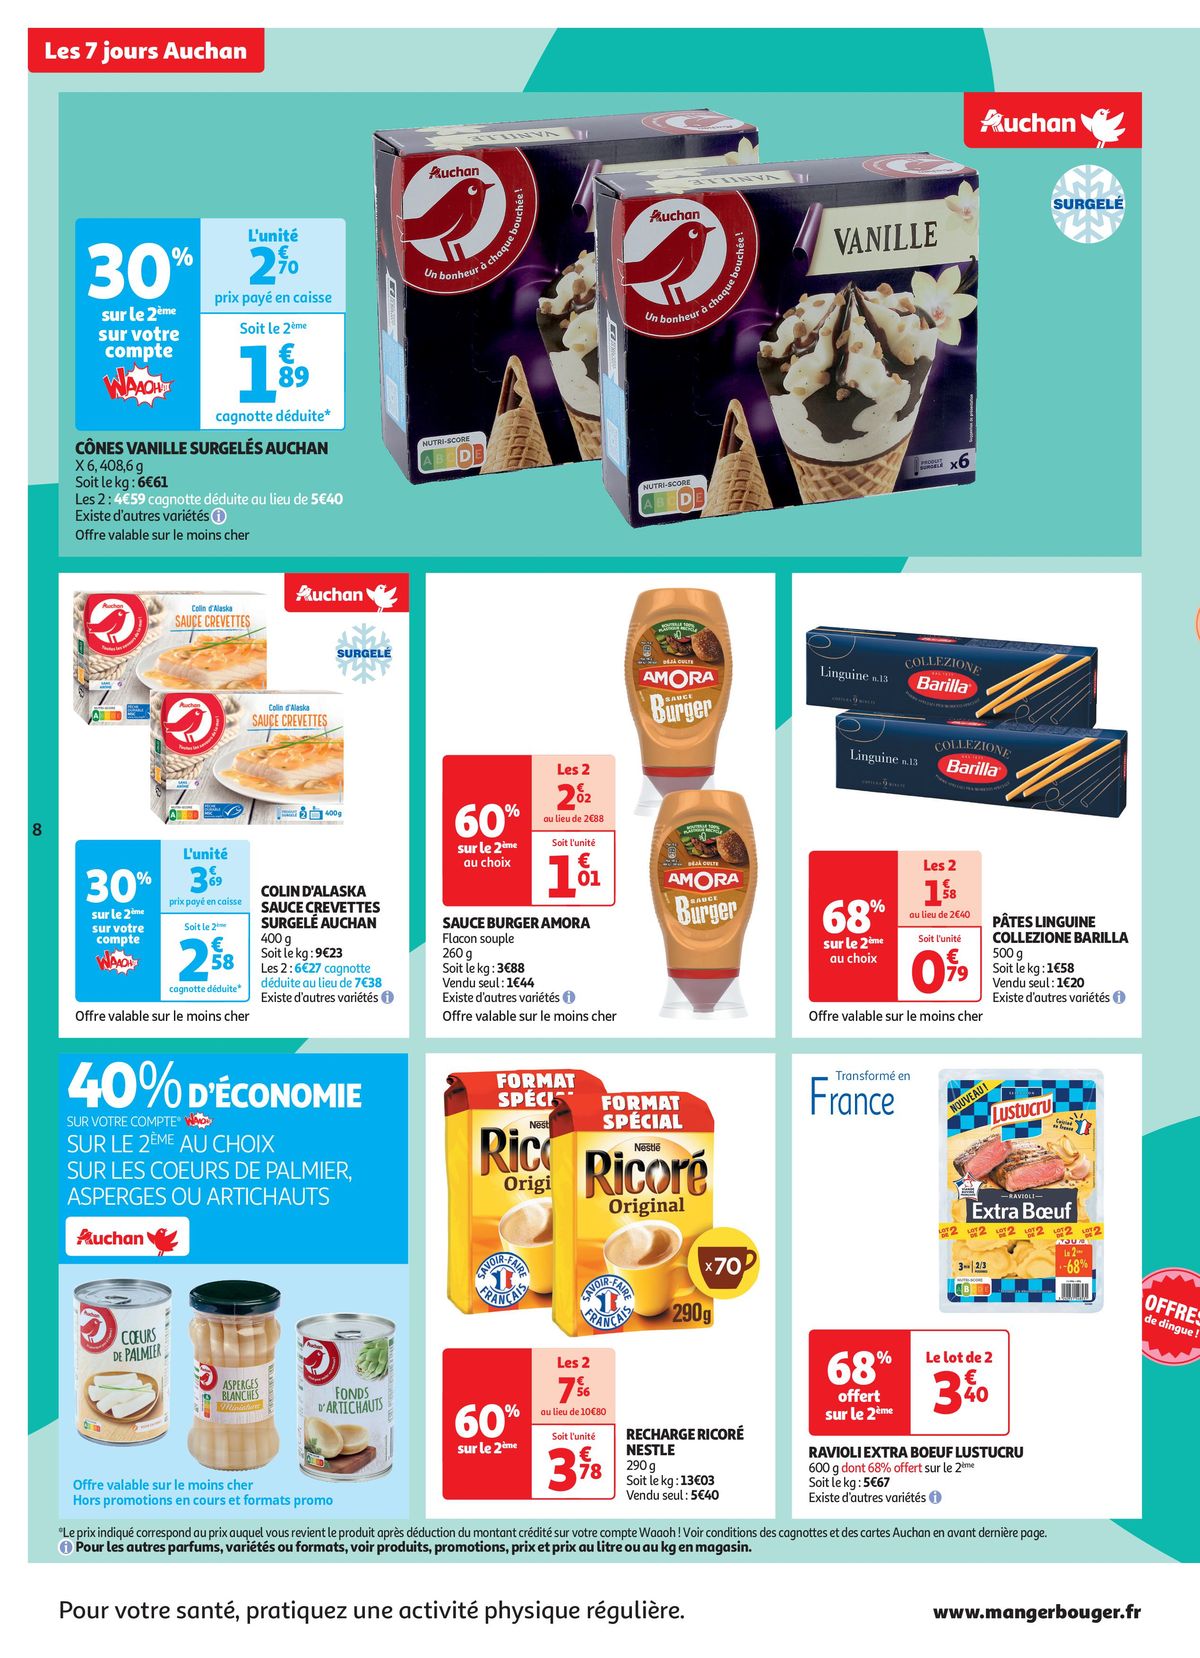 Catalogue C'est les 7 jours Auchan dans votre super !, page 00008